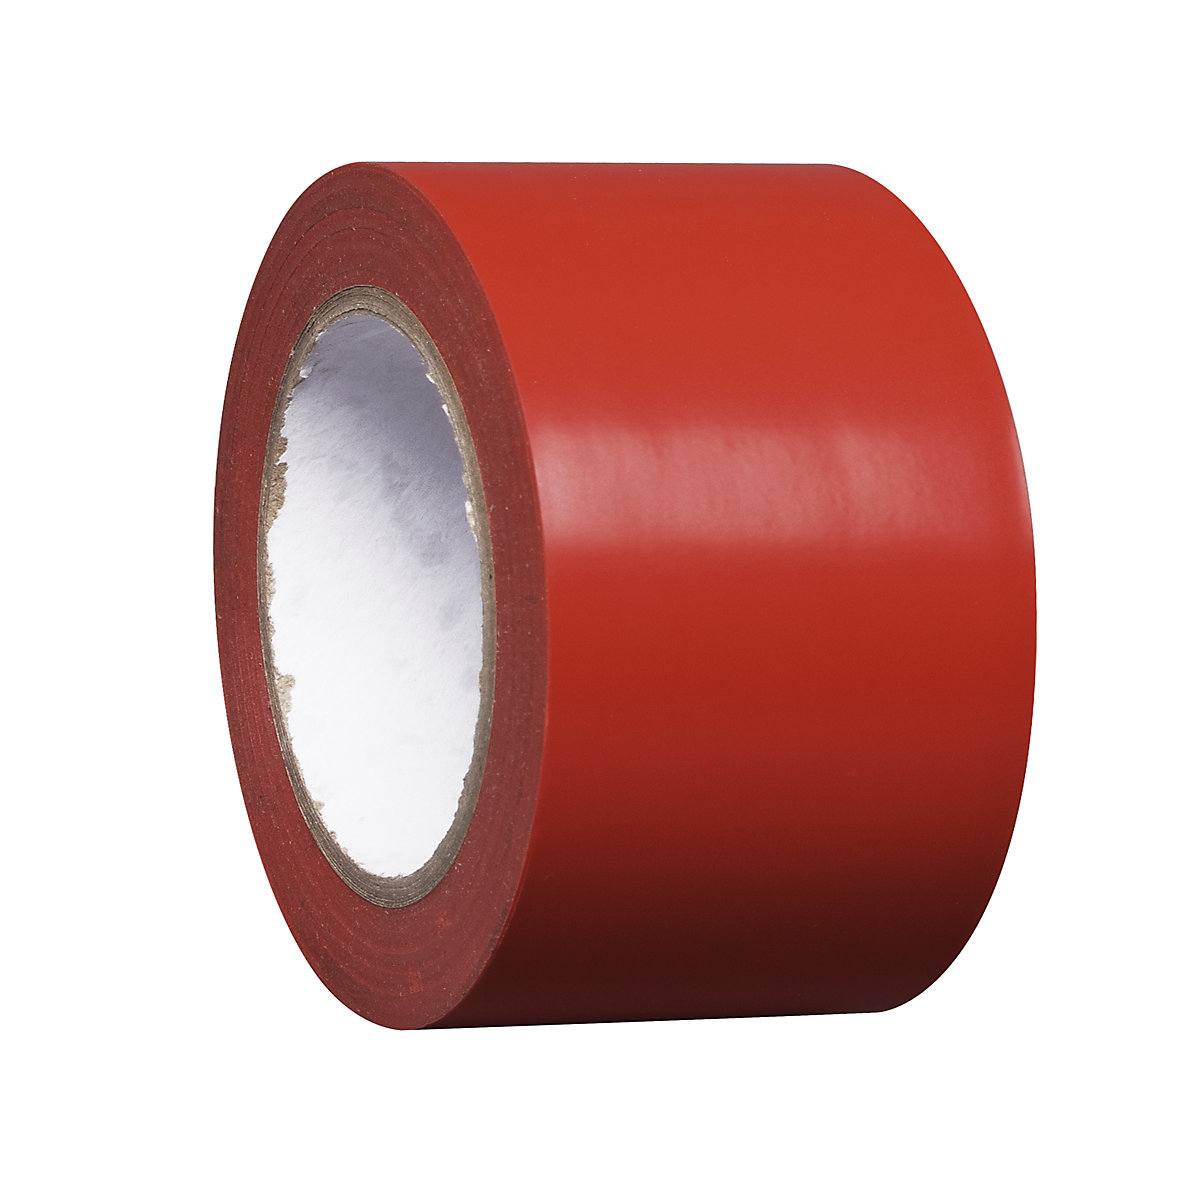 Talni označevalni trak iz vinila, enobarven, širina 75 mm, rdeč, DE 16 rol-6